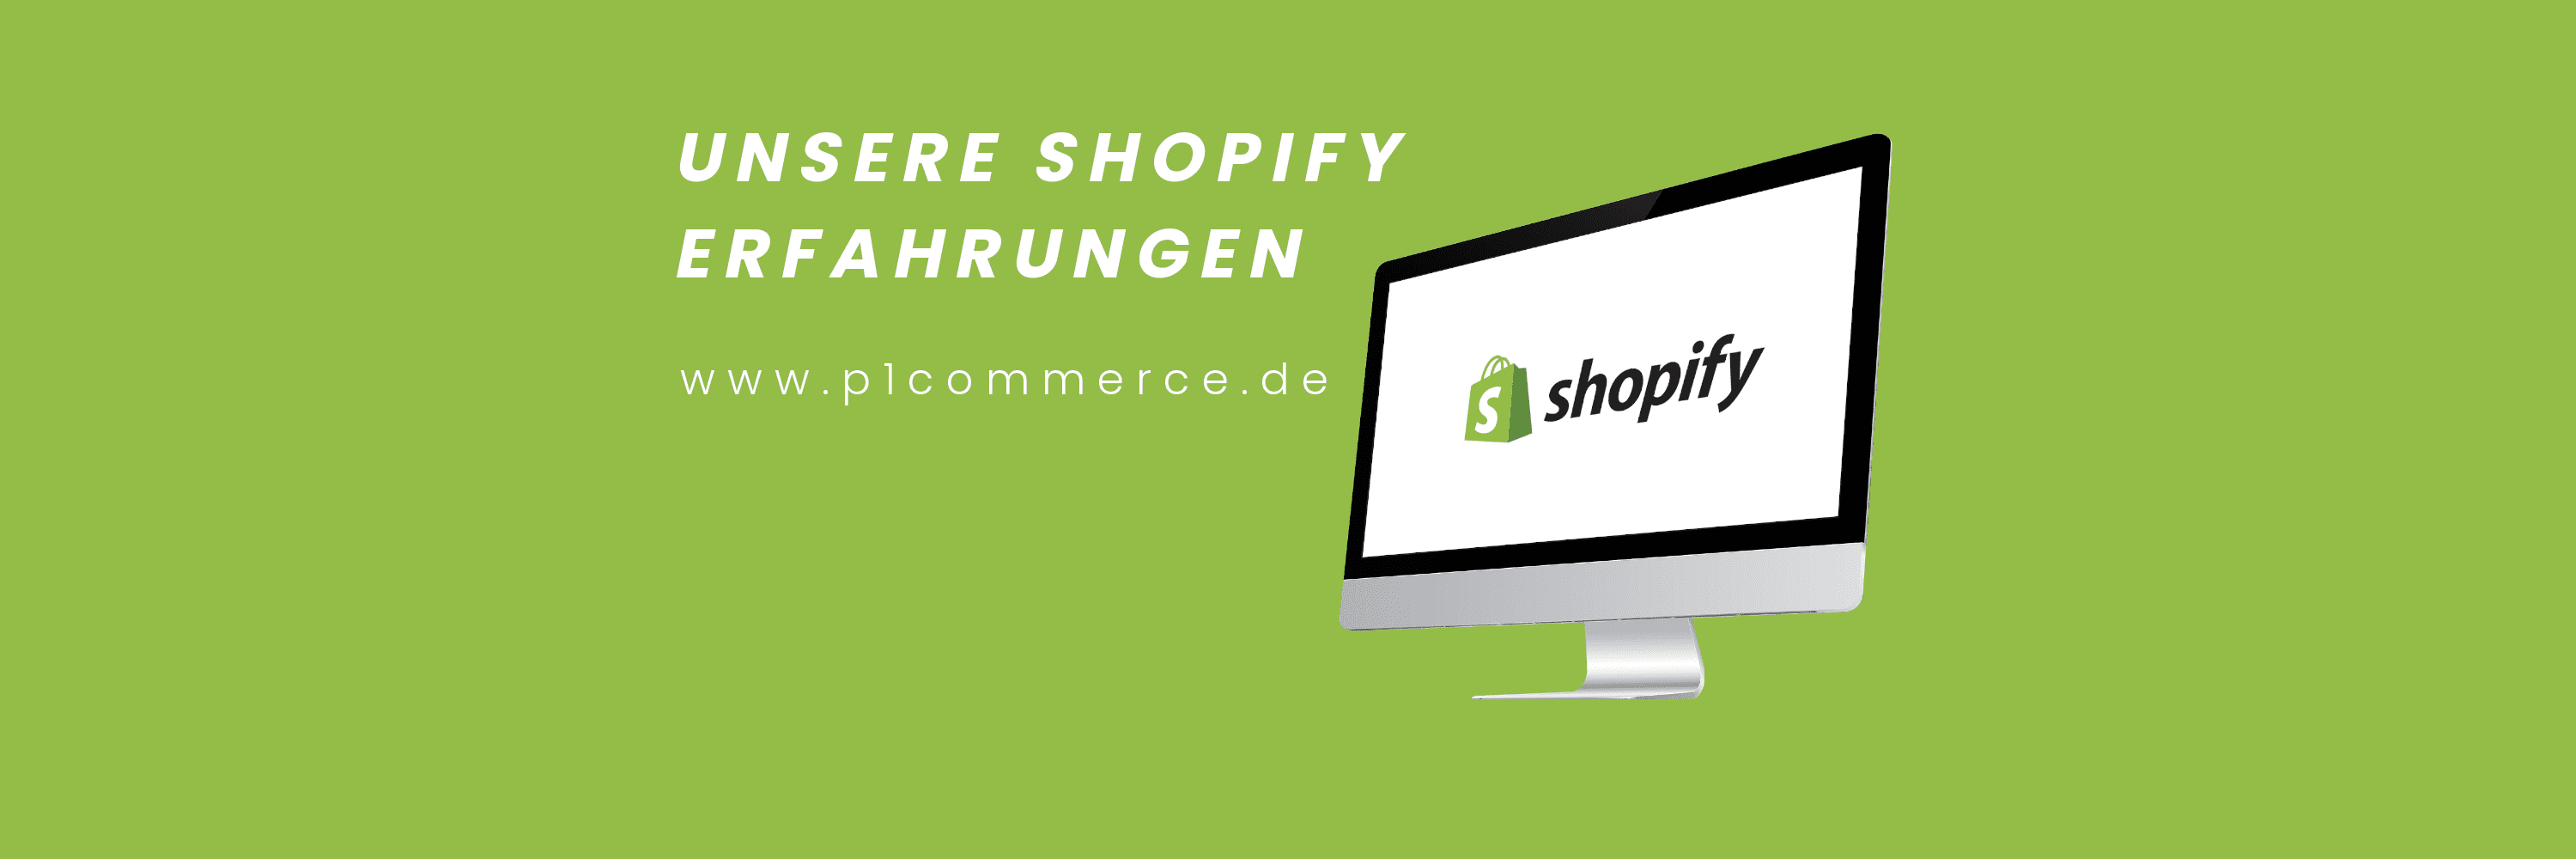 unsere shopify erfahrungen p1 commerce